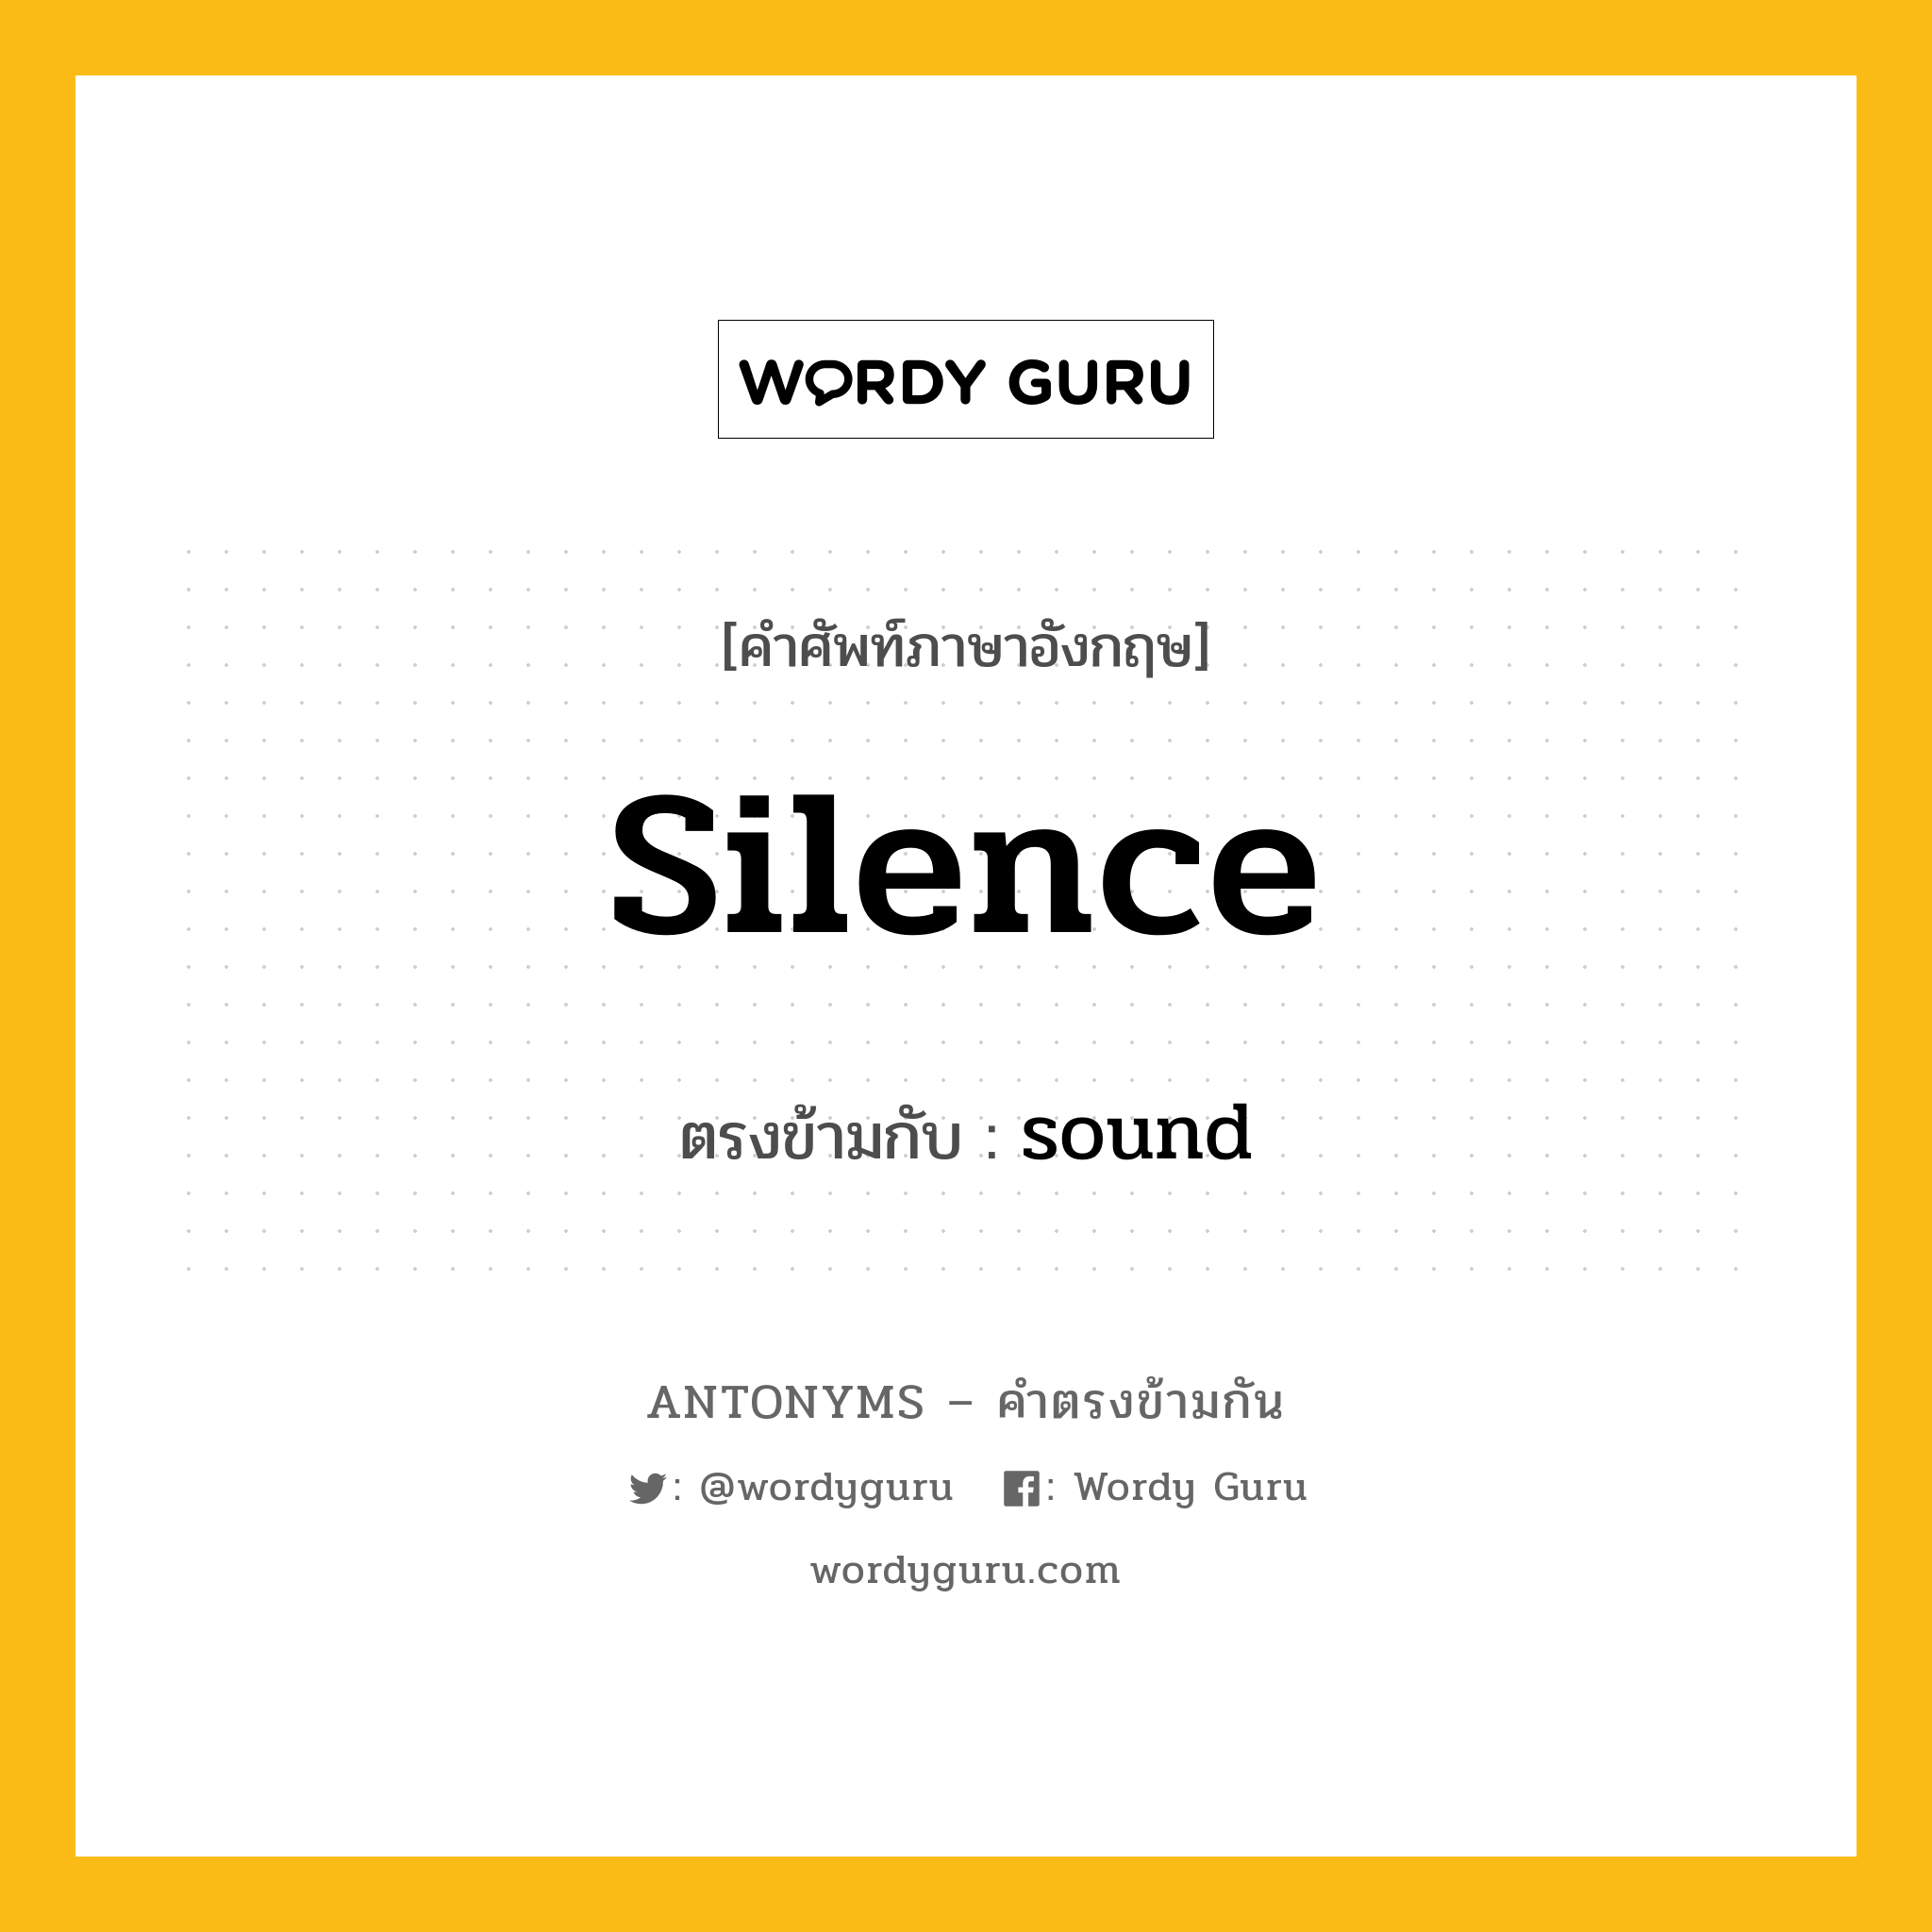 silence เป็นคำตรงข้ามกับคำไหนบ้าง?, คำศัพท์ภาษาอังกฤษ silence ตรงข้ามกับ sound หมวด sound